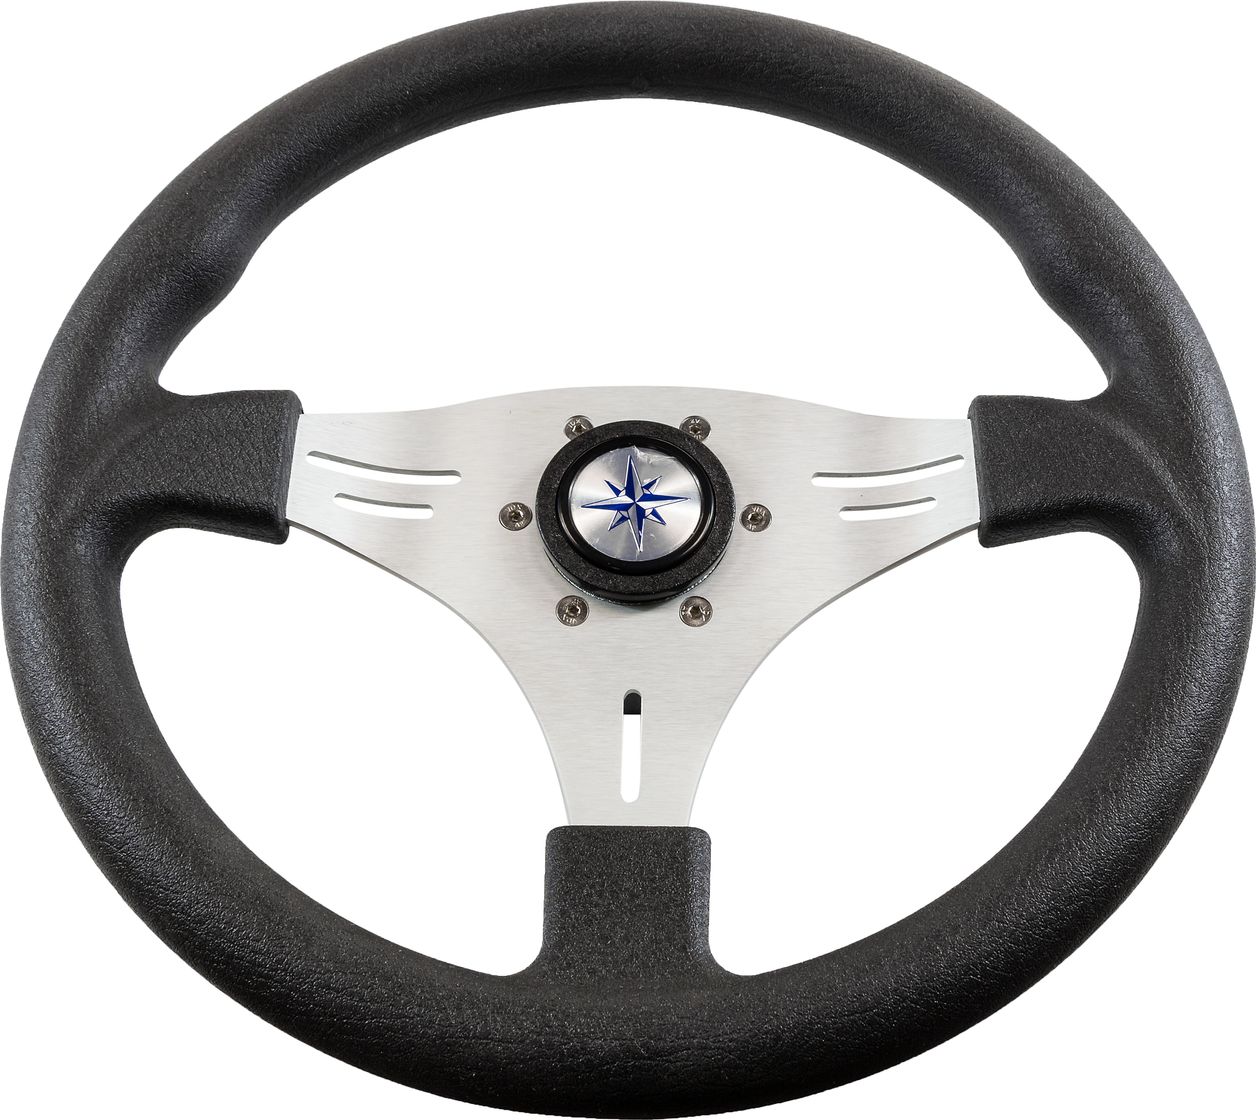 Рулевое колесо MANTA обод черный, спицы серебряные д. 355 мм VN70551-01 рулевое колесо delfino обод спицы серебряные д 340 мм vn70401 01